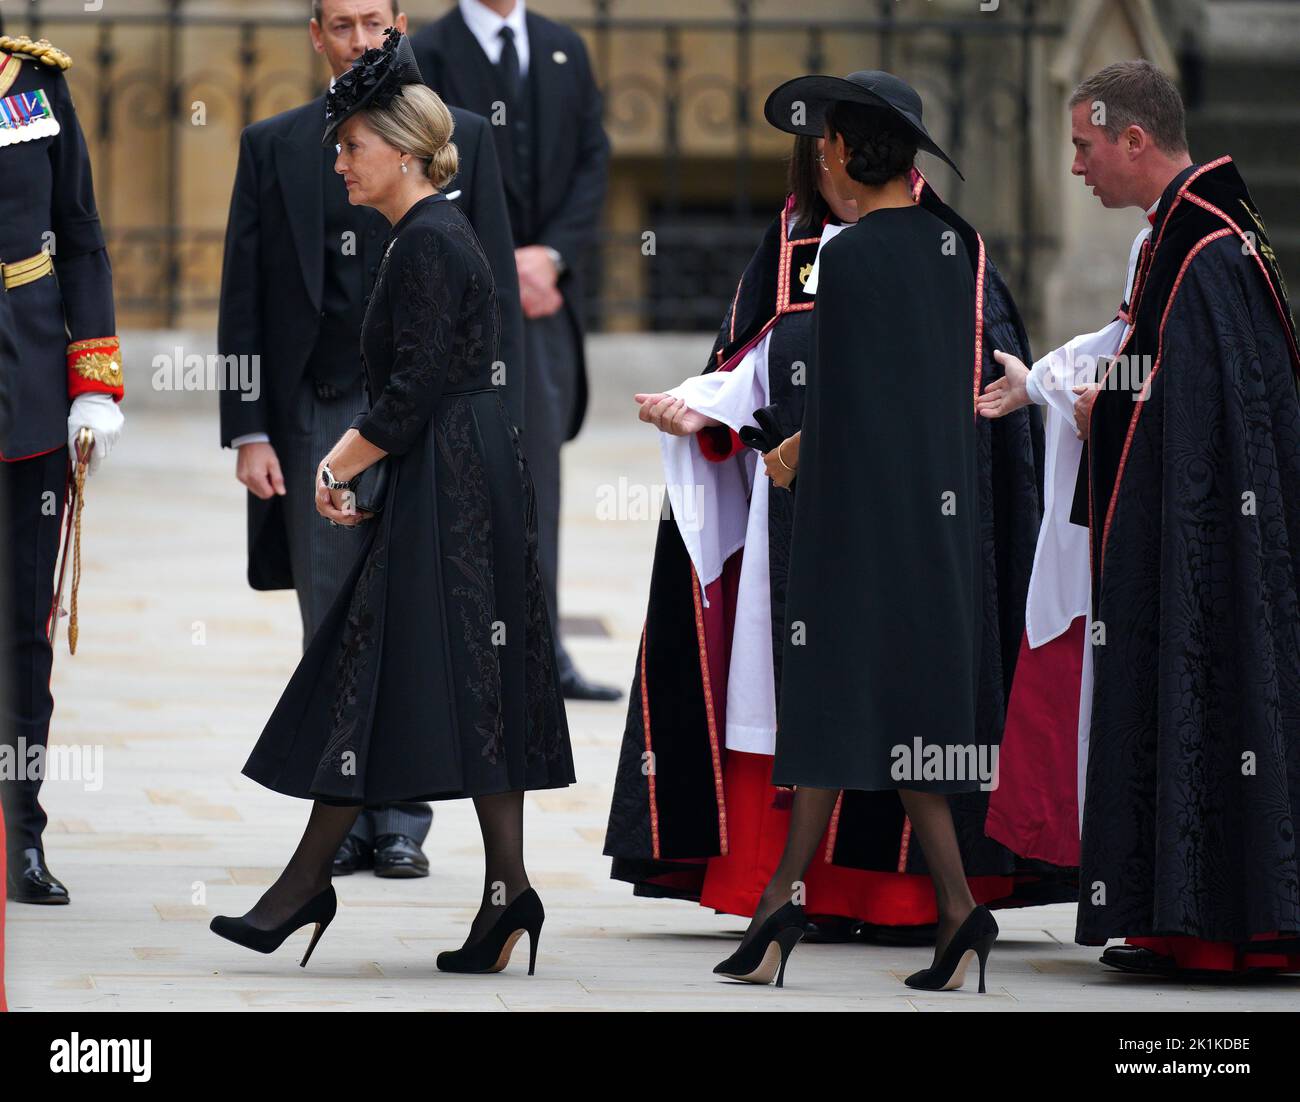 La comtesse de Wessex (à gauche) et la duchesse de Sussex arrivant au funérailles d'État de la reine Elizabeth II, tenue à l'abbaye de Westminster, Londres. Date de la photo: Lundi 19 septembre 2022. Banque D'Images